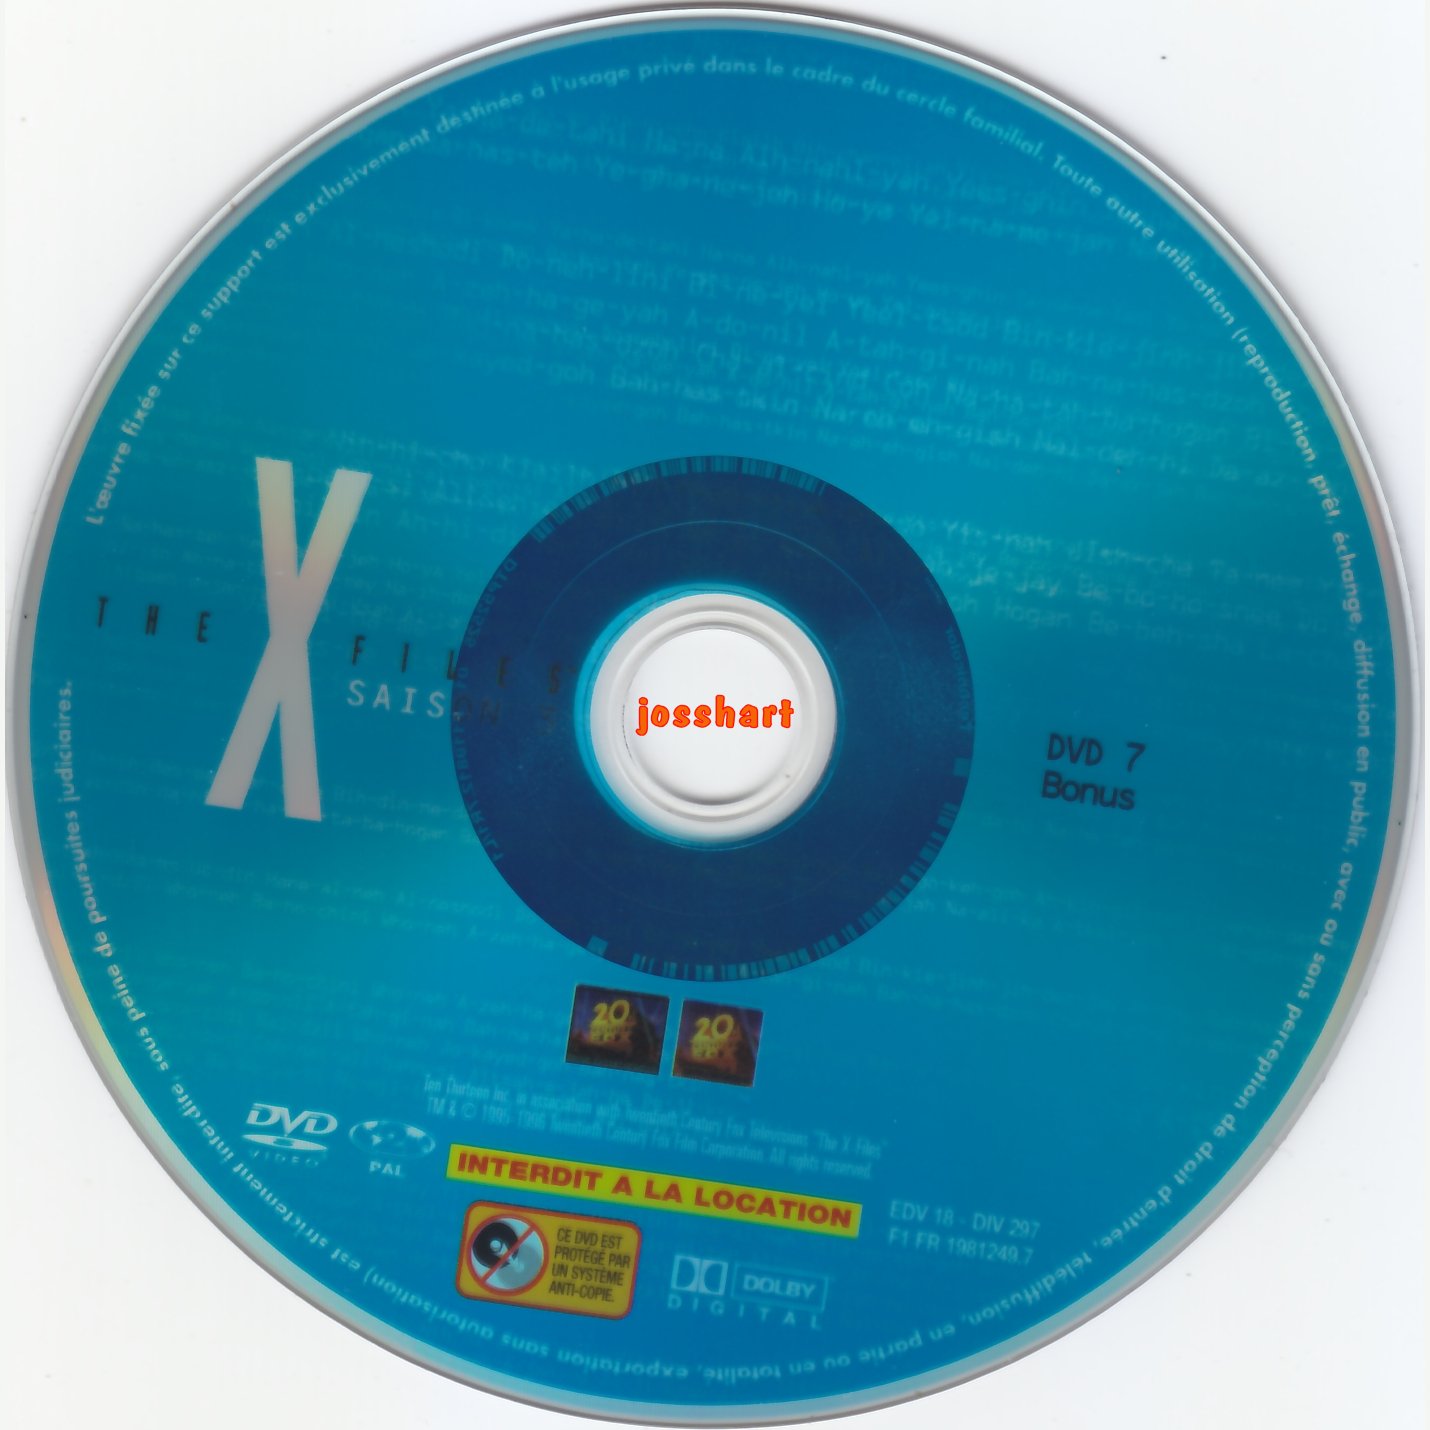 The X Files Saison 3 DVD 7 v2